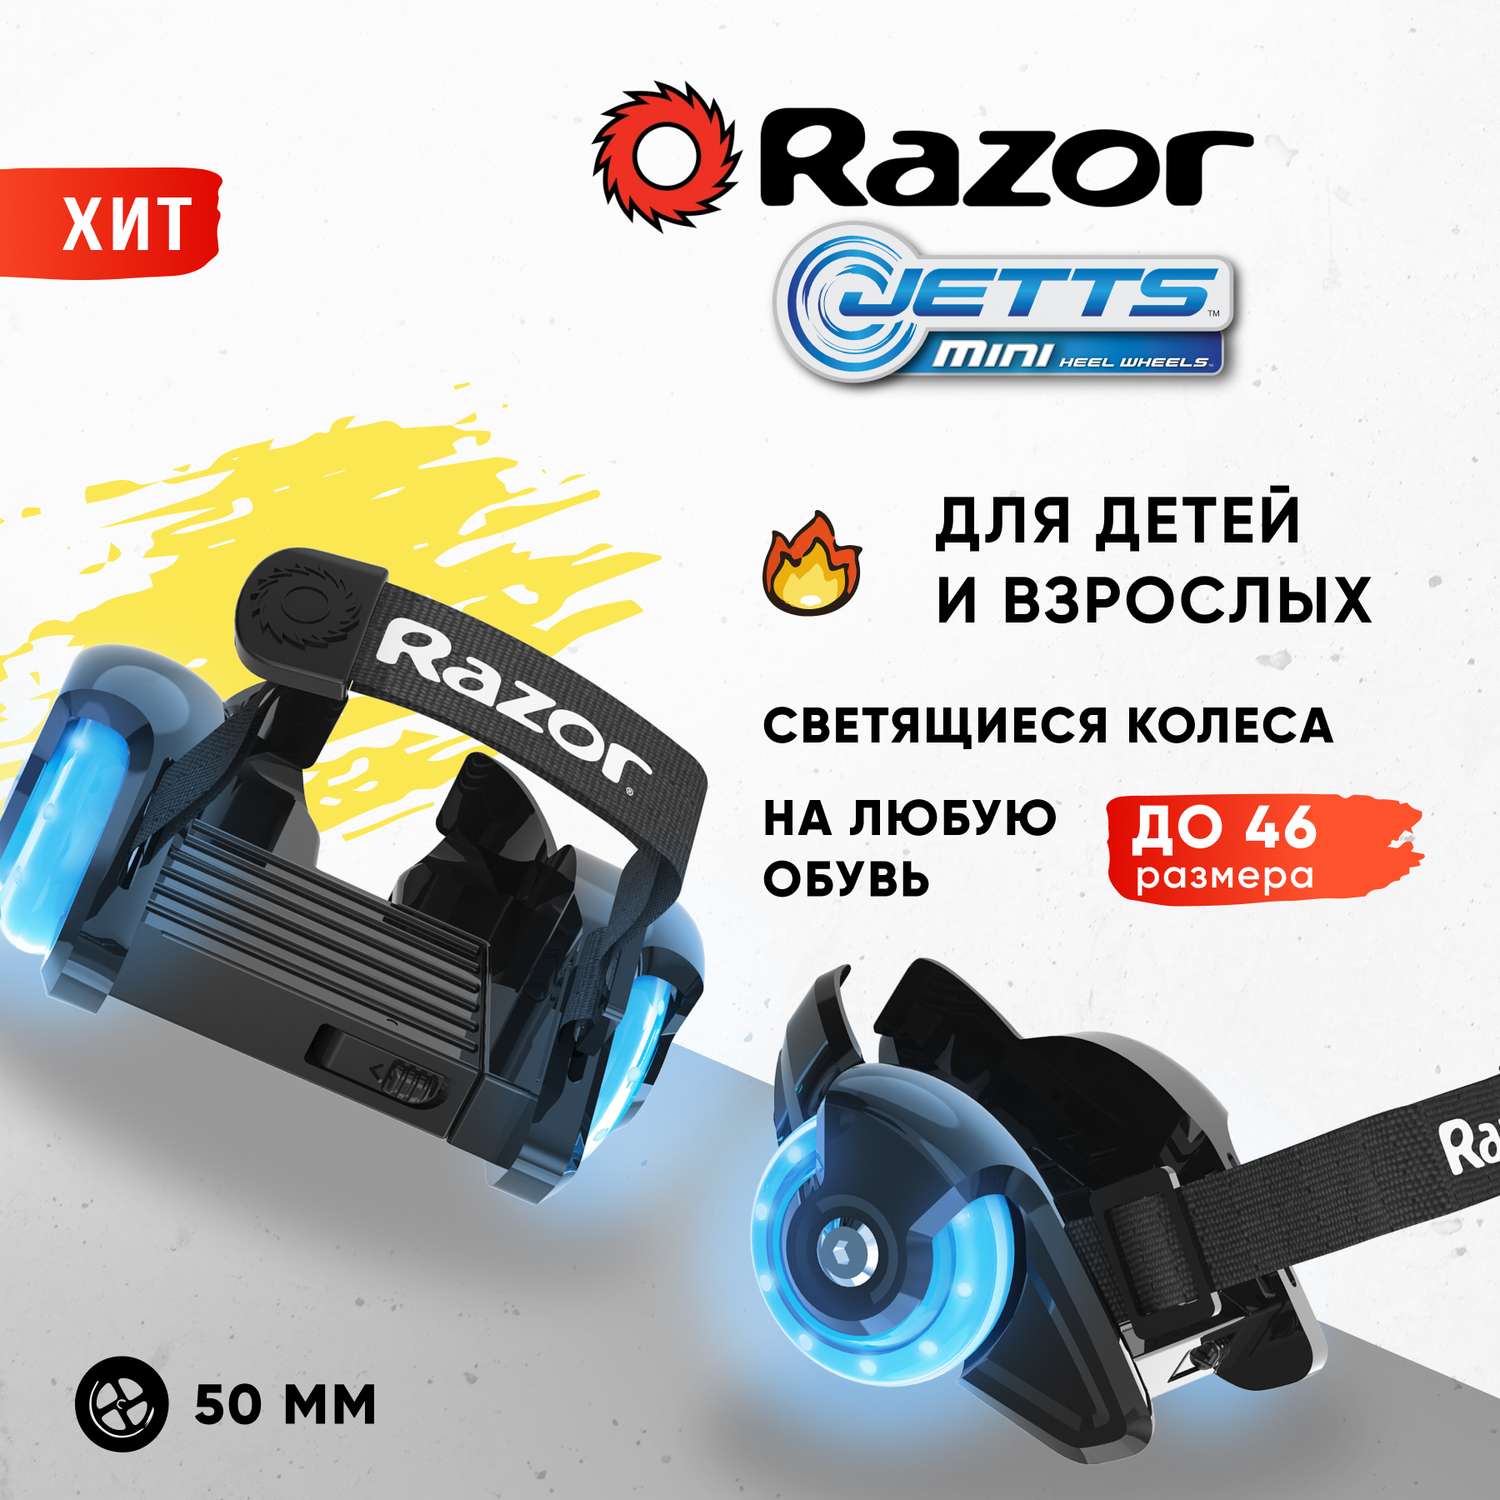 Ролики на обувь RAZOR Jetts Mini cиний светящиеся колёса универсальный размер для детей и подростков - фото 1